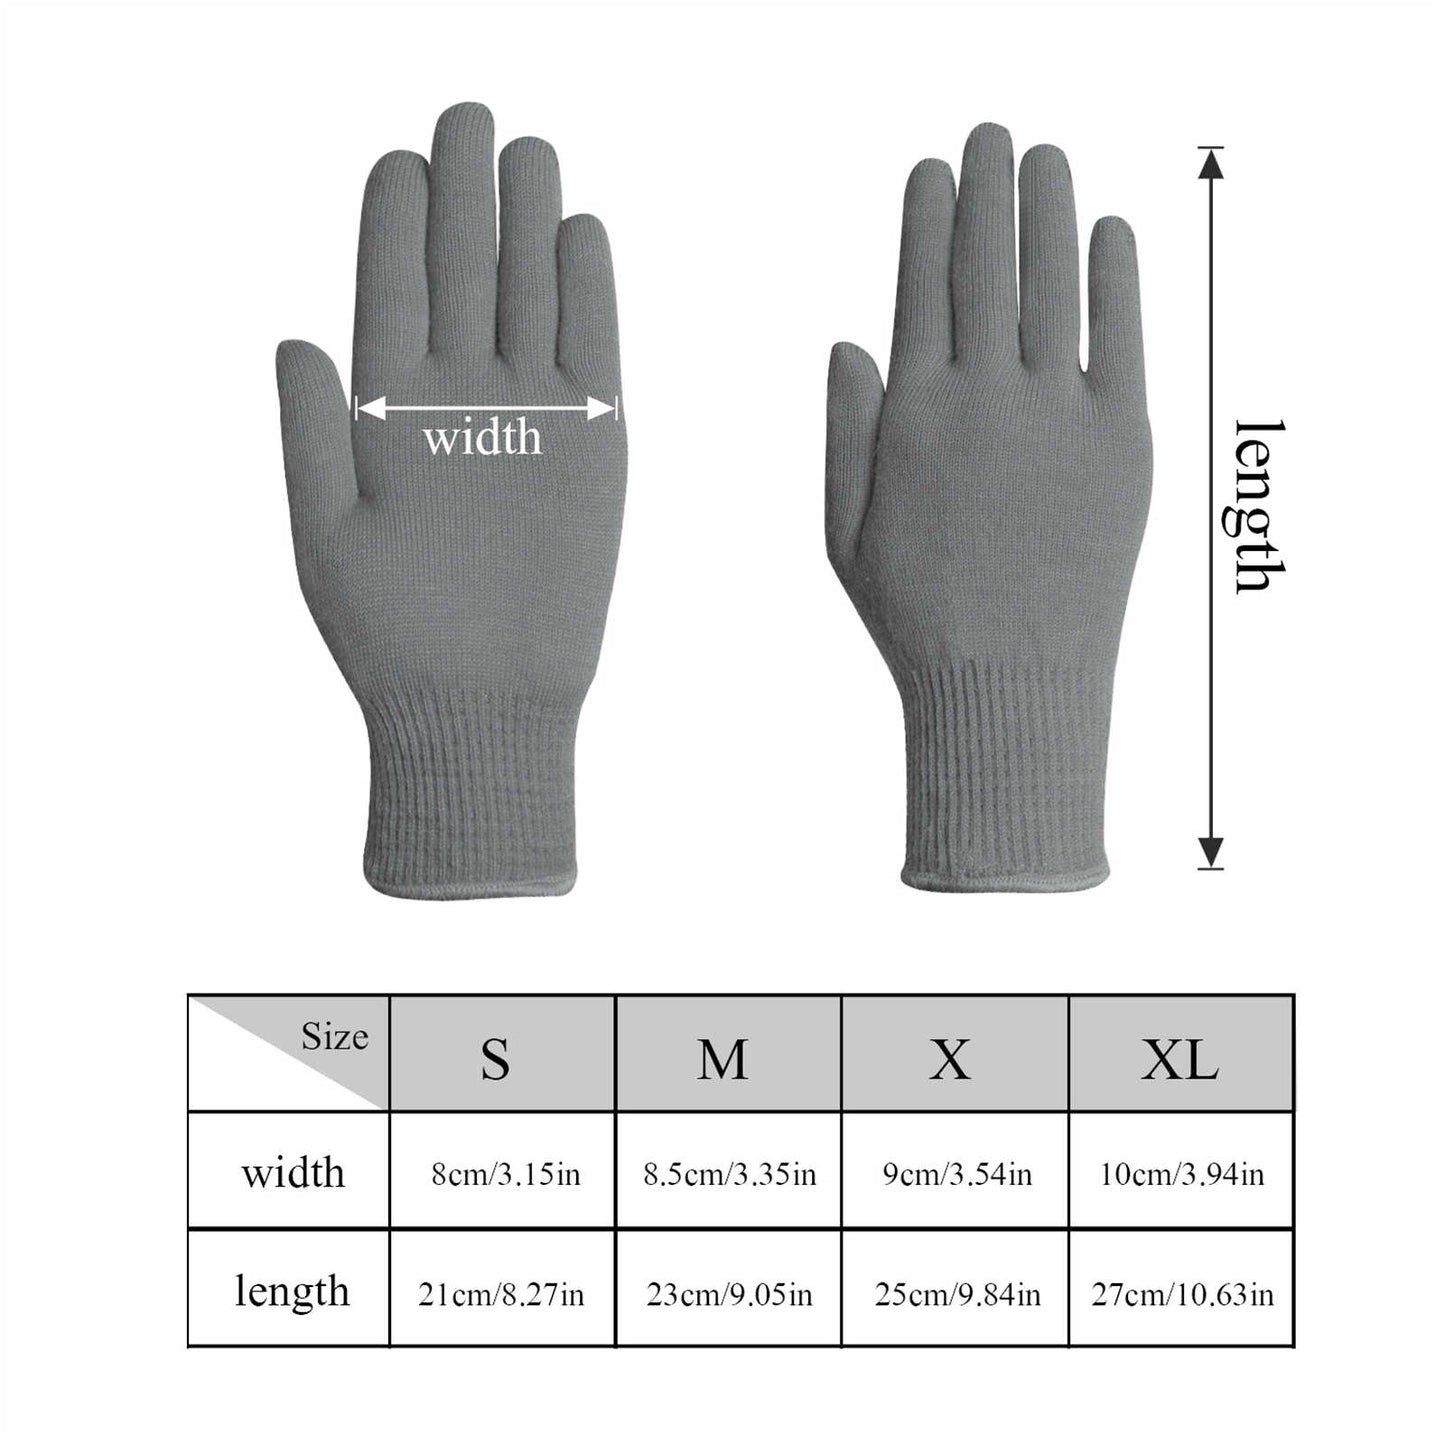 EvridWear 1 Pair Merino Wool String Knit Liner Full Finger Gloves, Men Women (Gray)